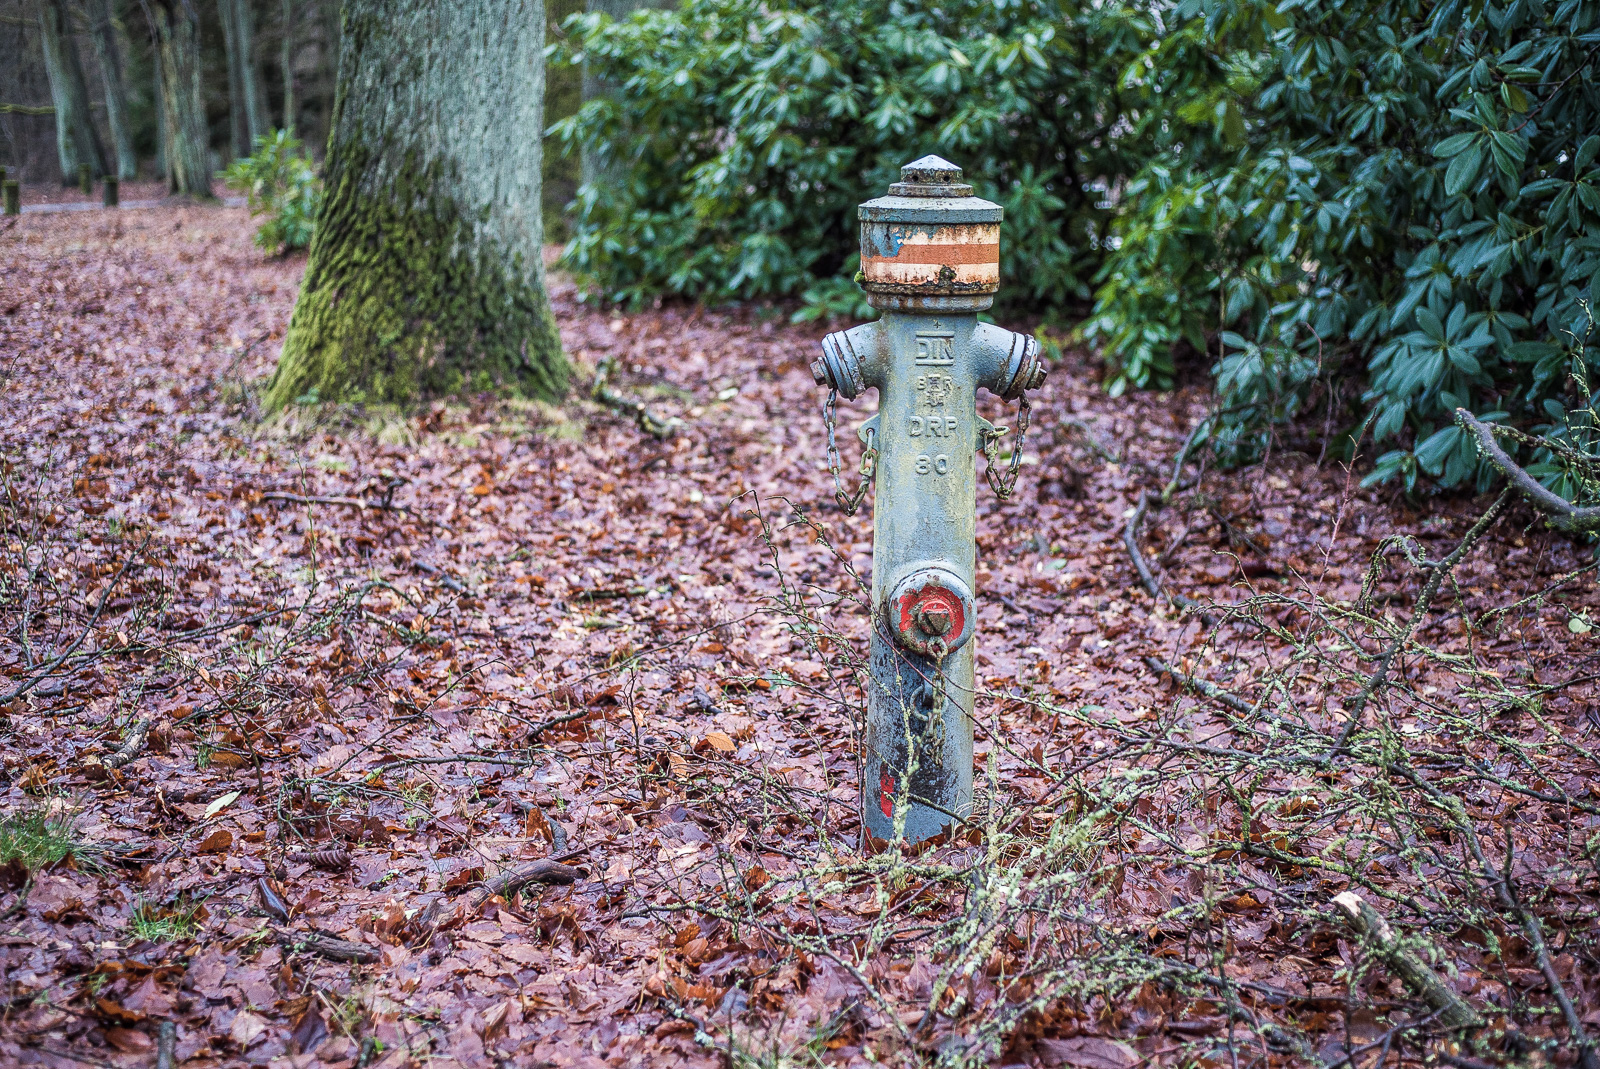 Ein alter, schmutziger Hydrant steht auf einem herumtergekommenen parkähnlichen Grundstück, das komplett mit vermoderndem Laub bedeckt ist. Rechts dahinter Rhododendron-Hecken, nach links in der Unschärfe mehrere Eichen- oder ähnliche Baumstämme